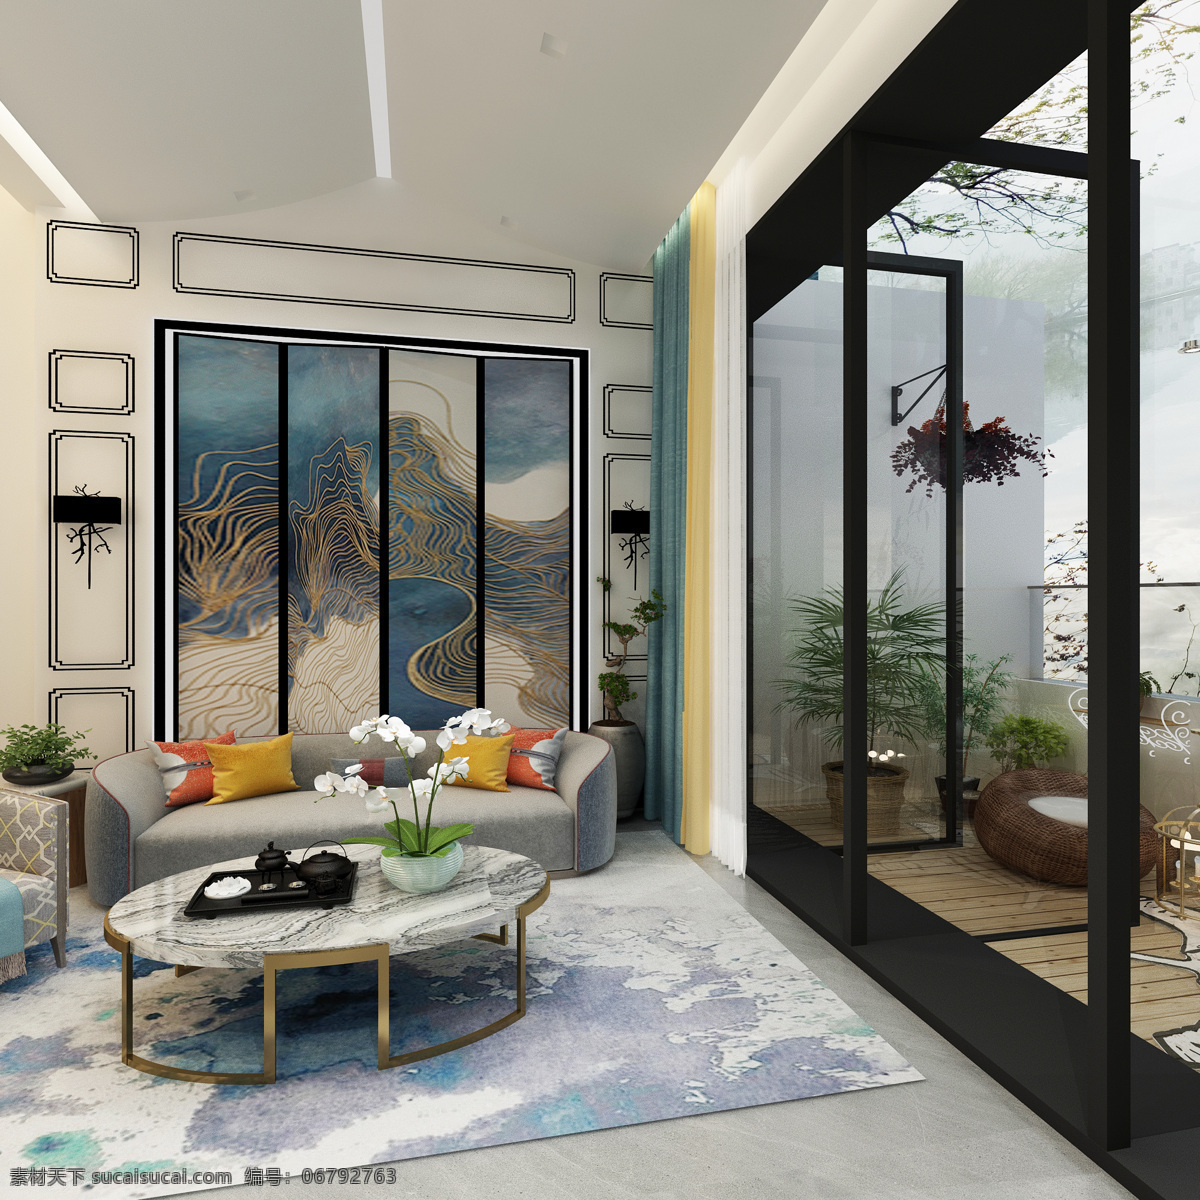 客厅设计 豪宅地产 别墅 客厅样板间 欧式 阳台 环境设计 室内设计